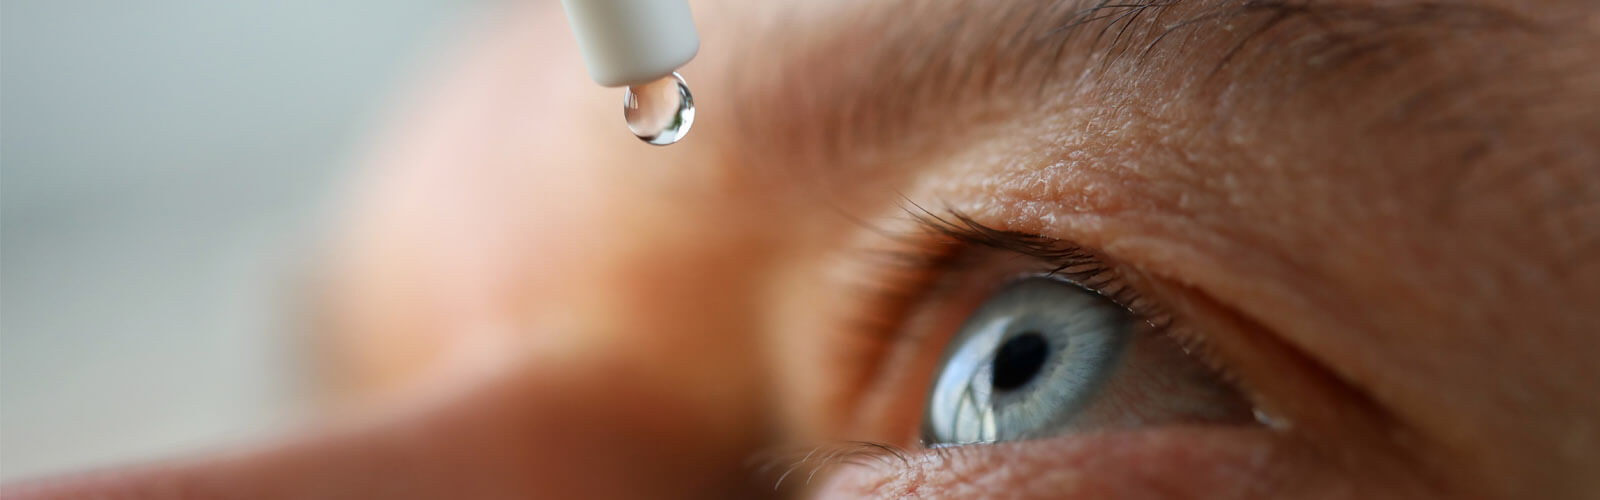 Kontaktlinsen, Augentropfen und Gleitfähigkeit